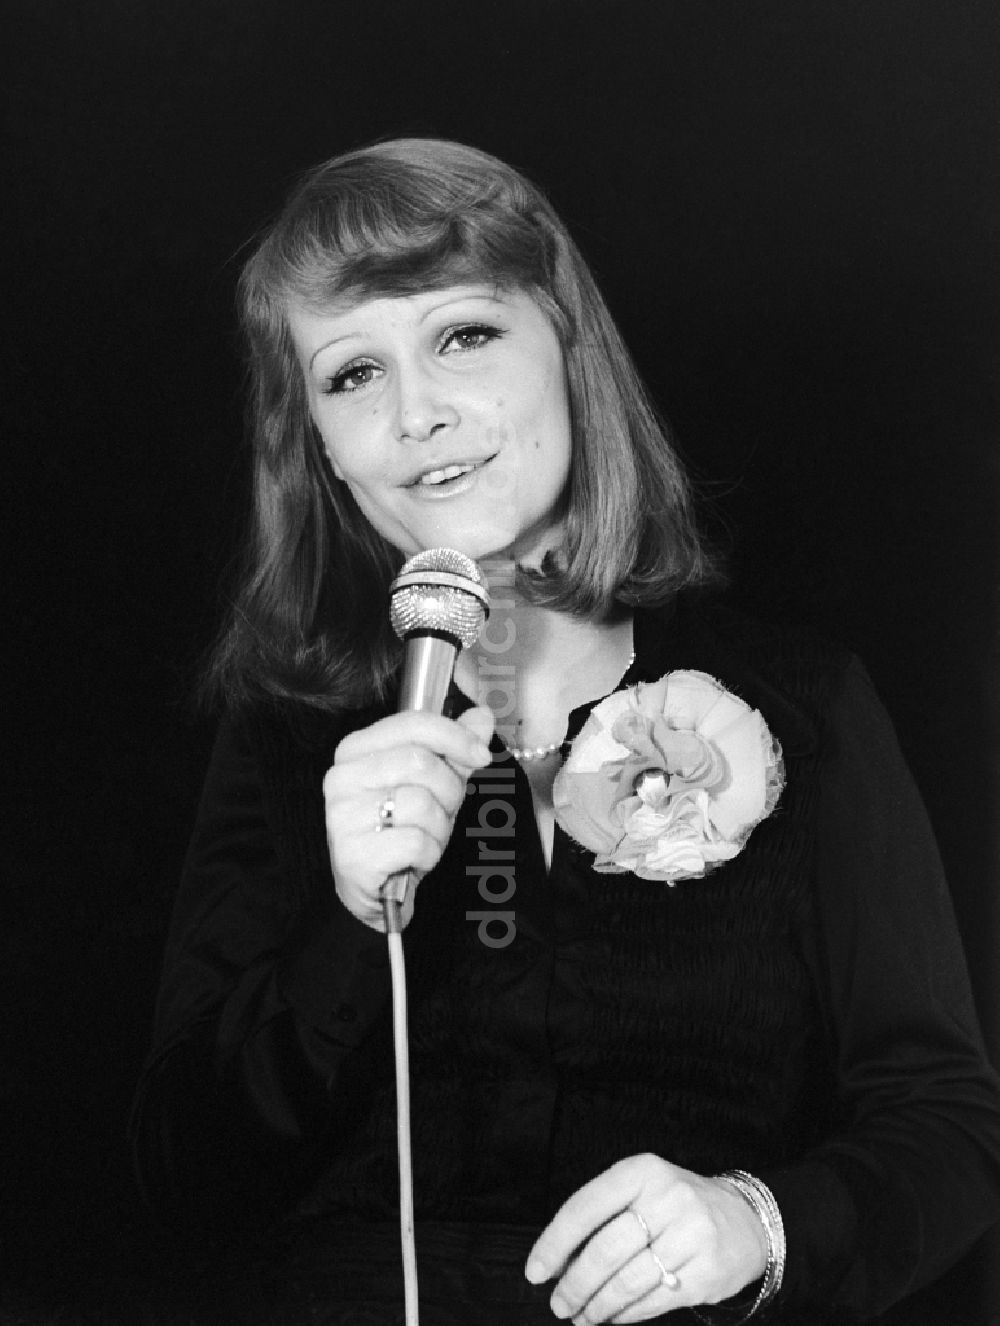 DDR-Fotoarchiv: Berlin - Schauspielerin und Chansonnière Dorit Gäbler in Berlin, der ehemaligen Hauptstadt der DDR, Deutsche Demokratische Republik